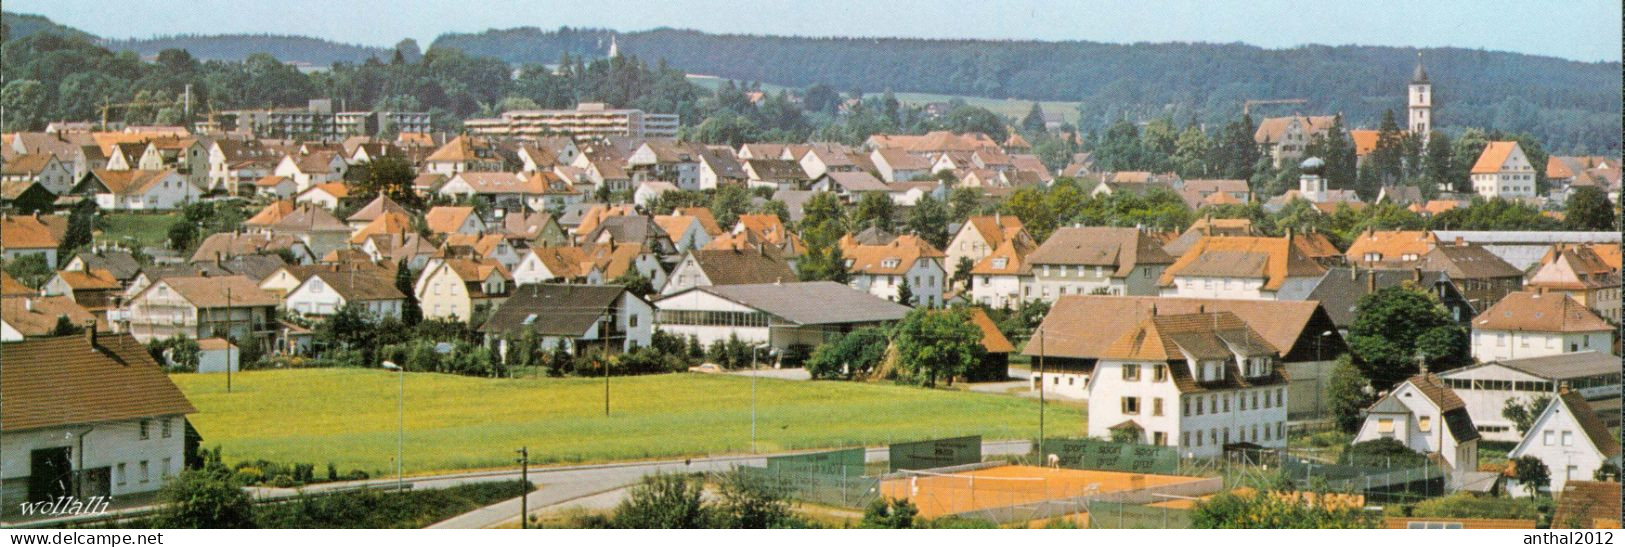 Superrar Wohngebiet In 7960 Aulendorf Um 70er Bildverlag Werner - Biberach